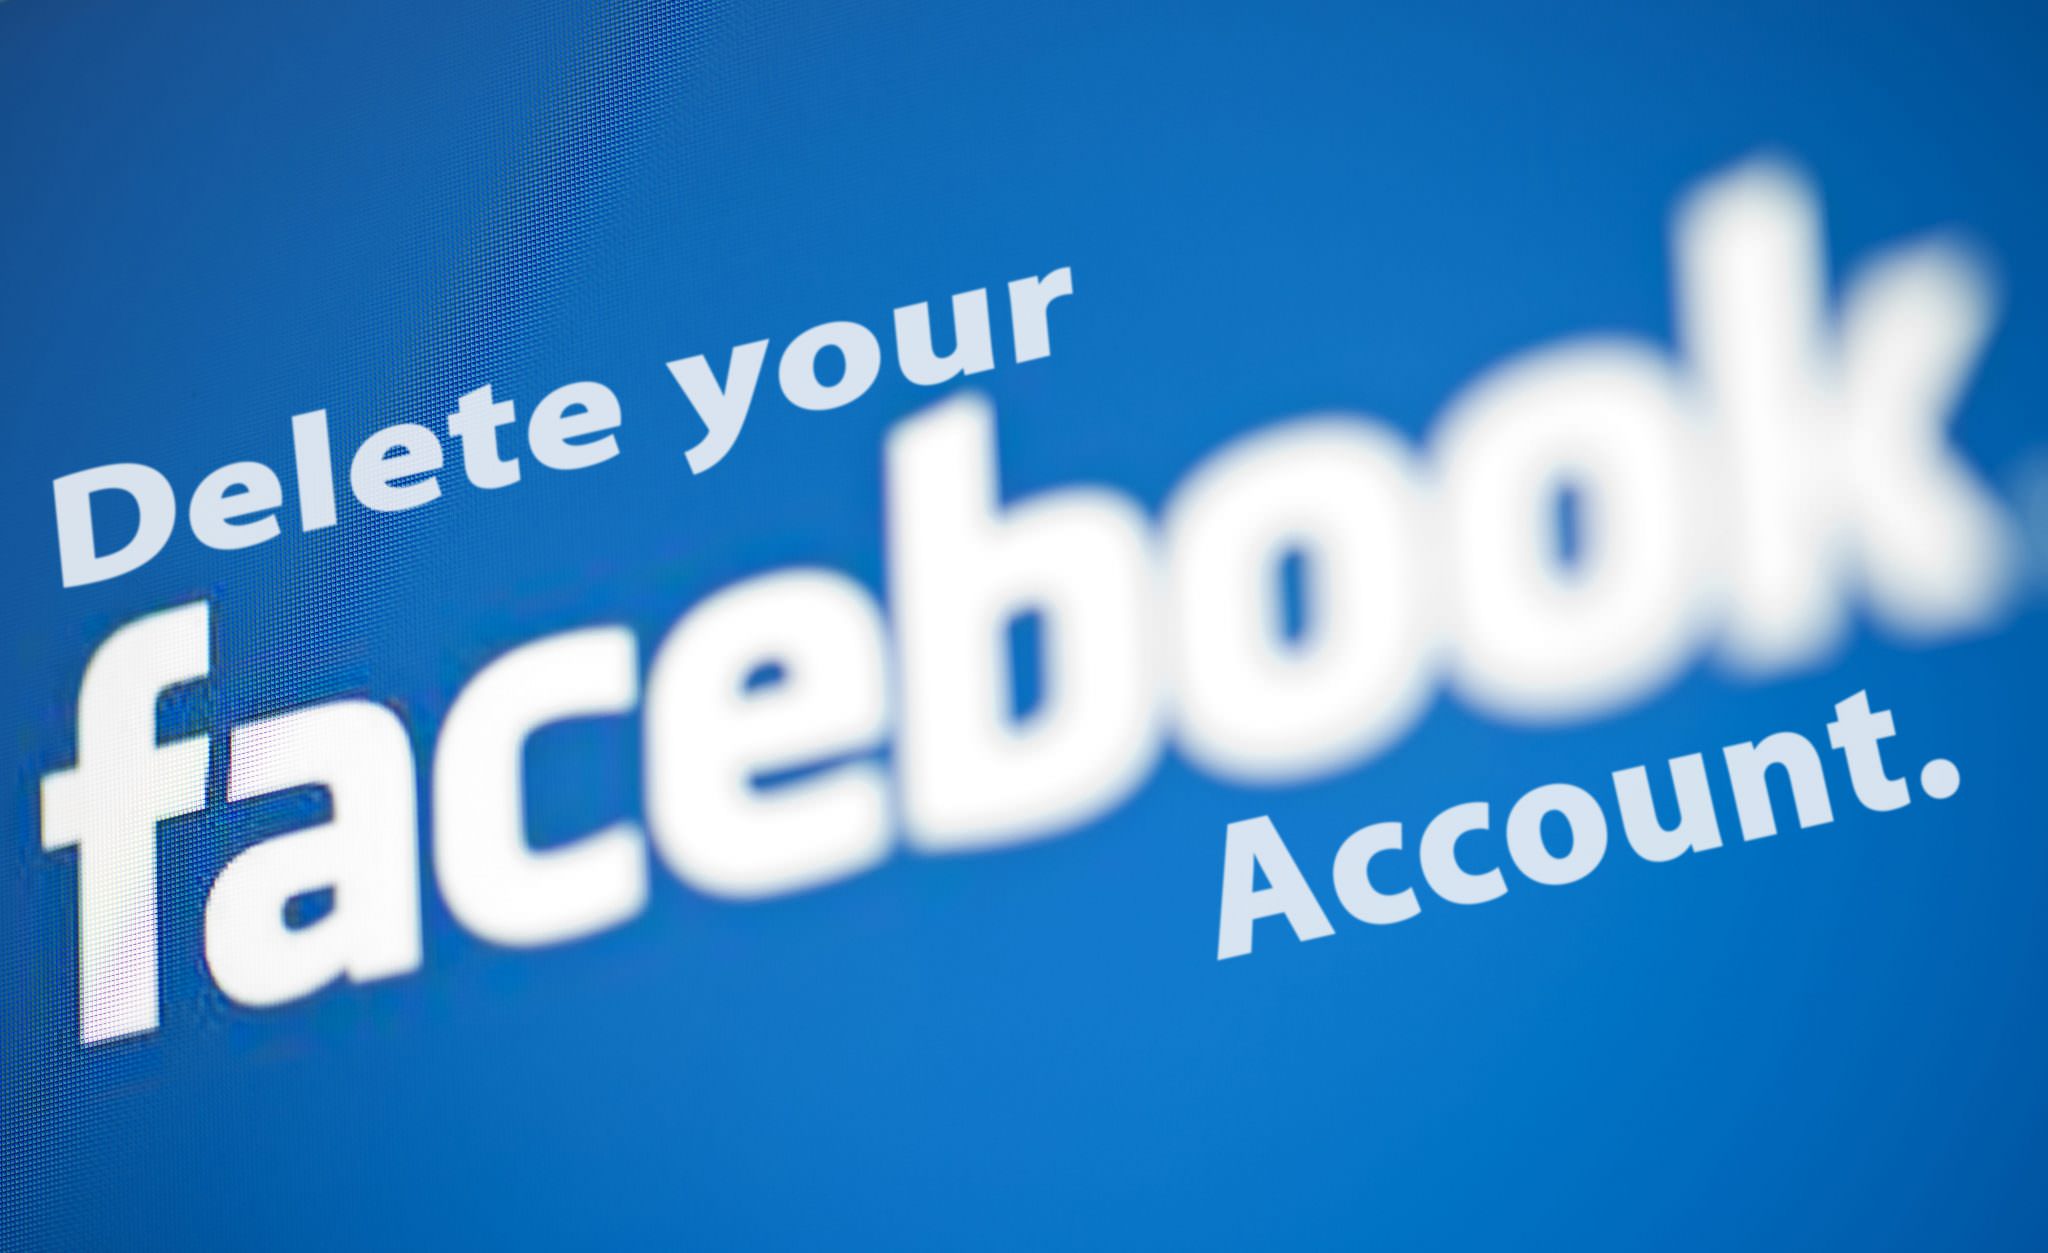 آموزش: چگونه حساب فیس بوک خود را موقت و یا بطور دائم حذف کنیم